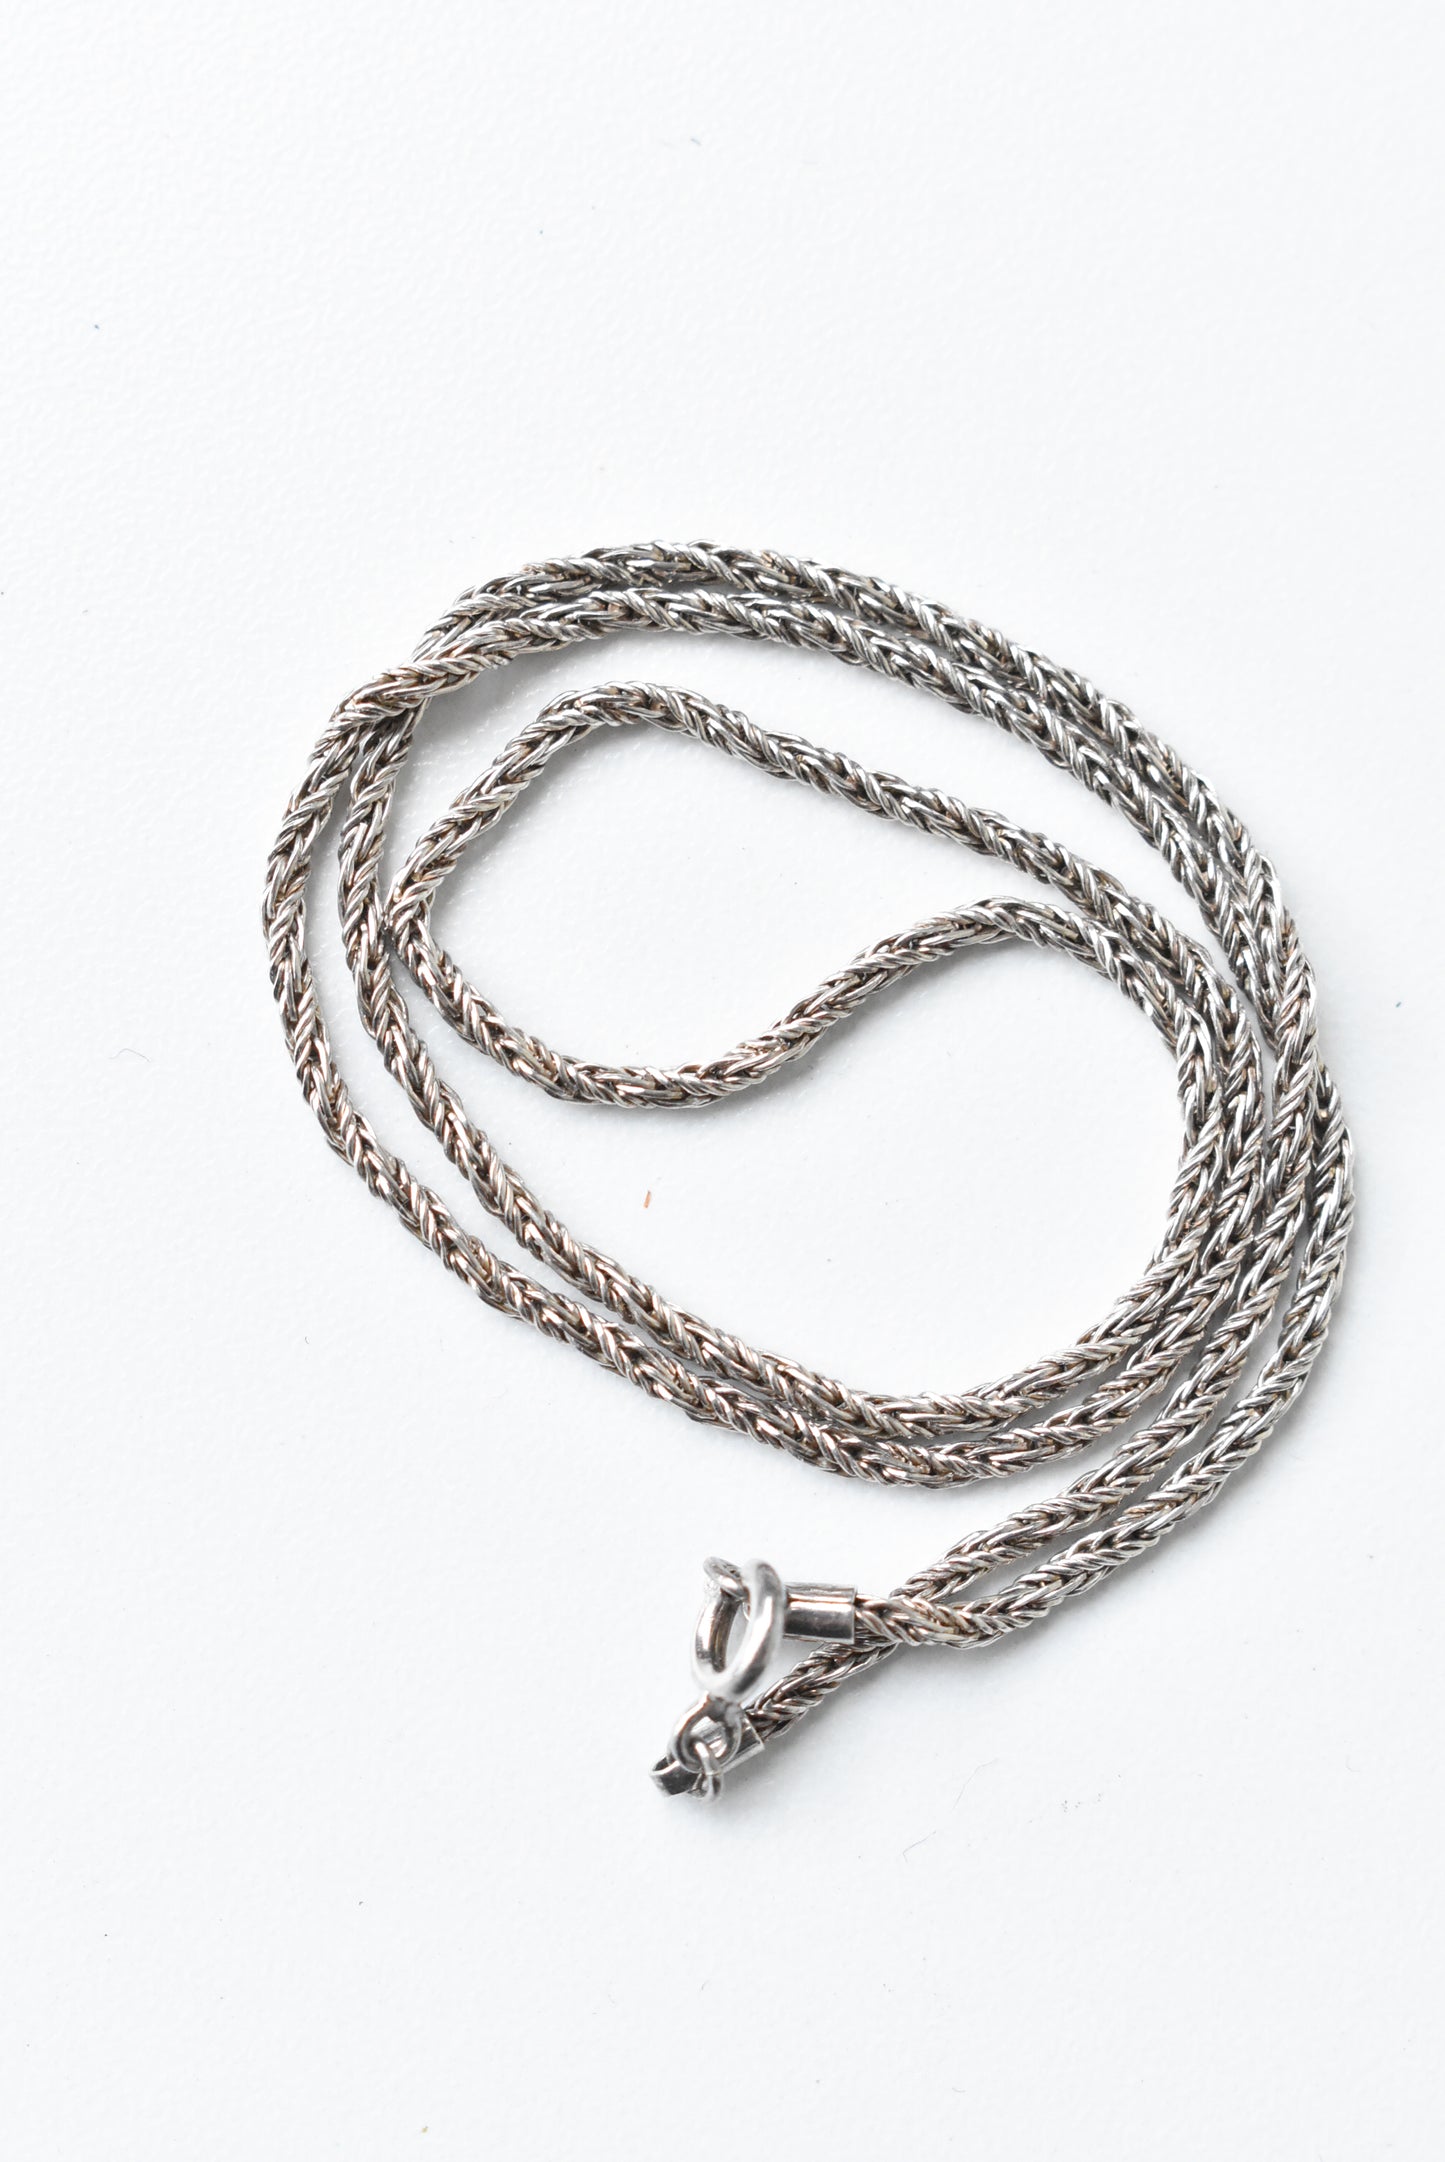 Braided silver chain